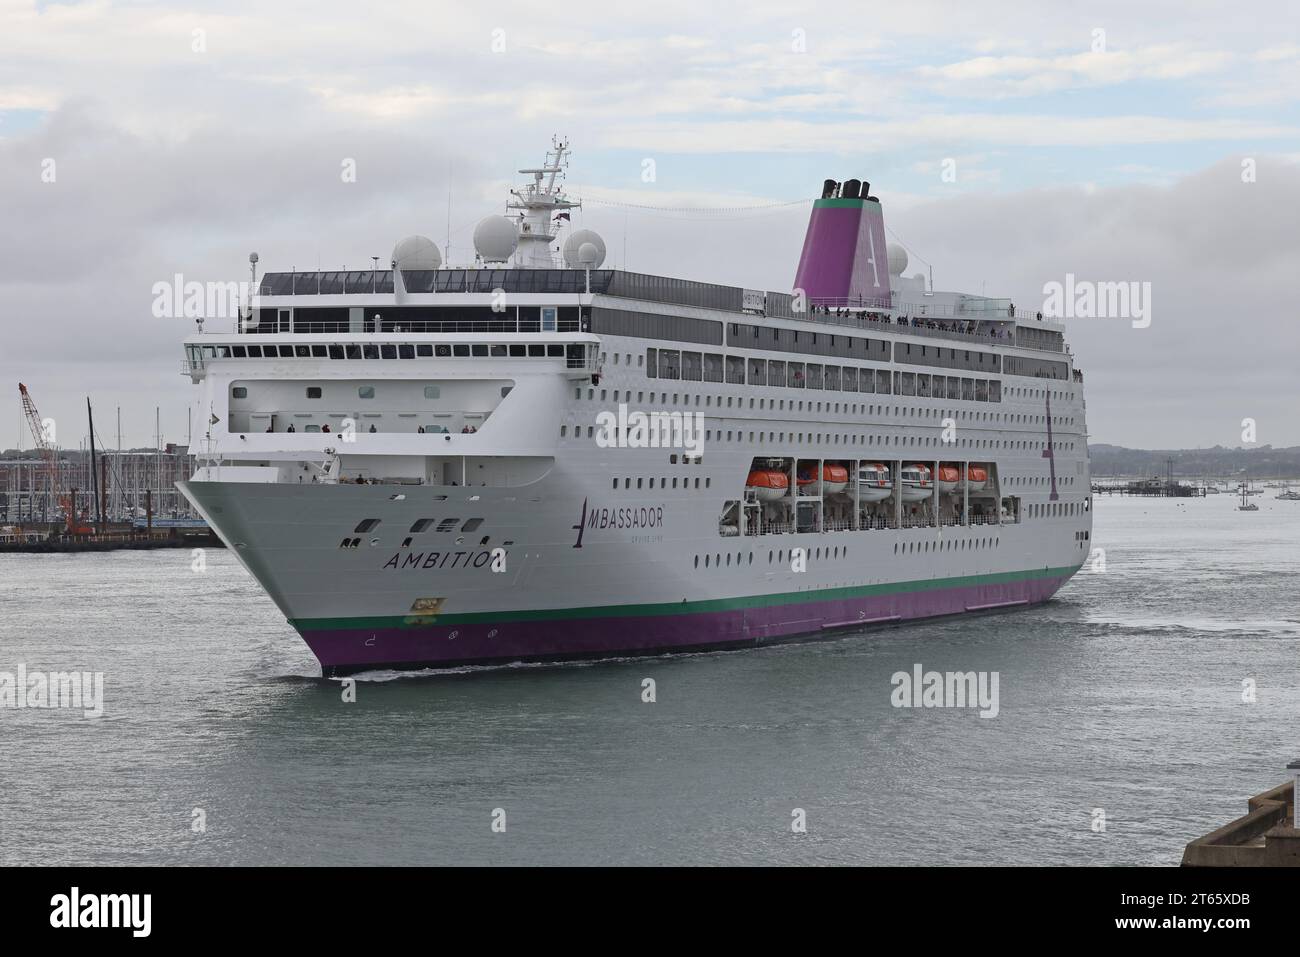 Le navire MS AMBITION DE la Ambassador Cruise Line battant pavillon des Bahamas quitte le terminal international pour la prochaine étape de son voyage Banque D'Images